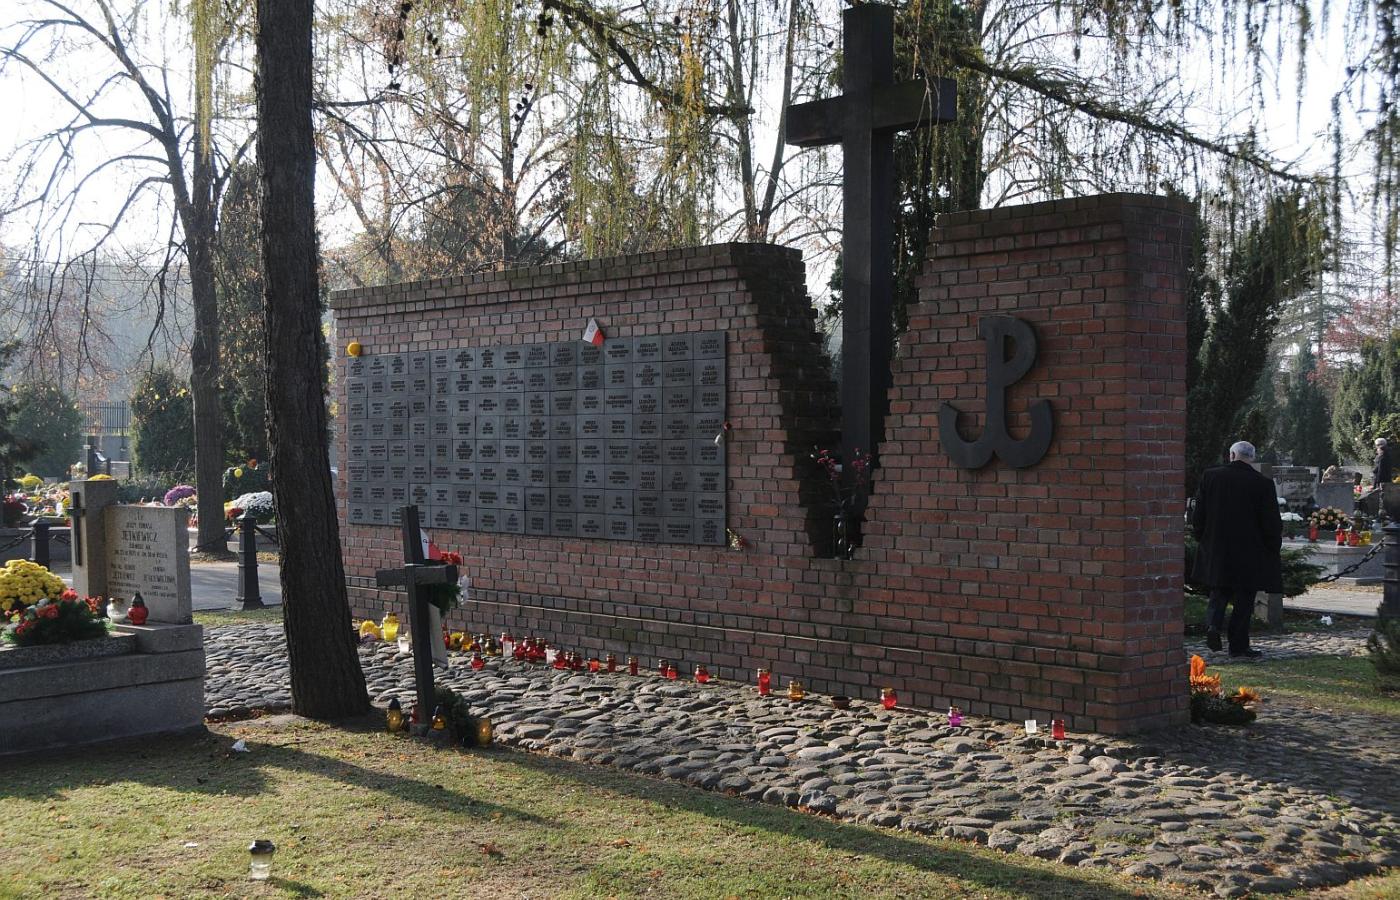 Pomnik na powązkowskiej kwaterze Łączka, w którym spoczywają prochy zamordowanych przez bezpiekę w latach 1945-56.